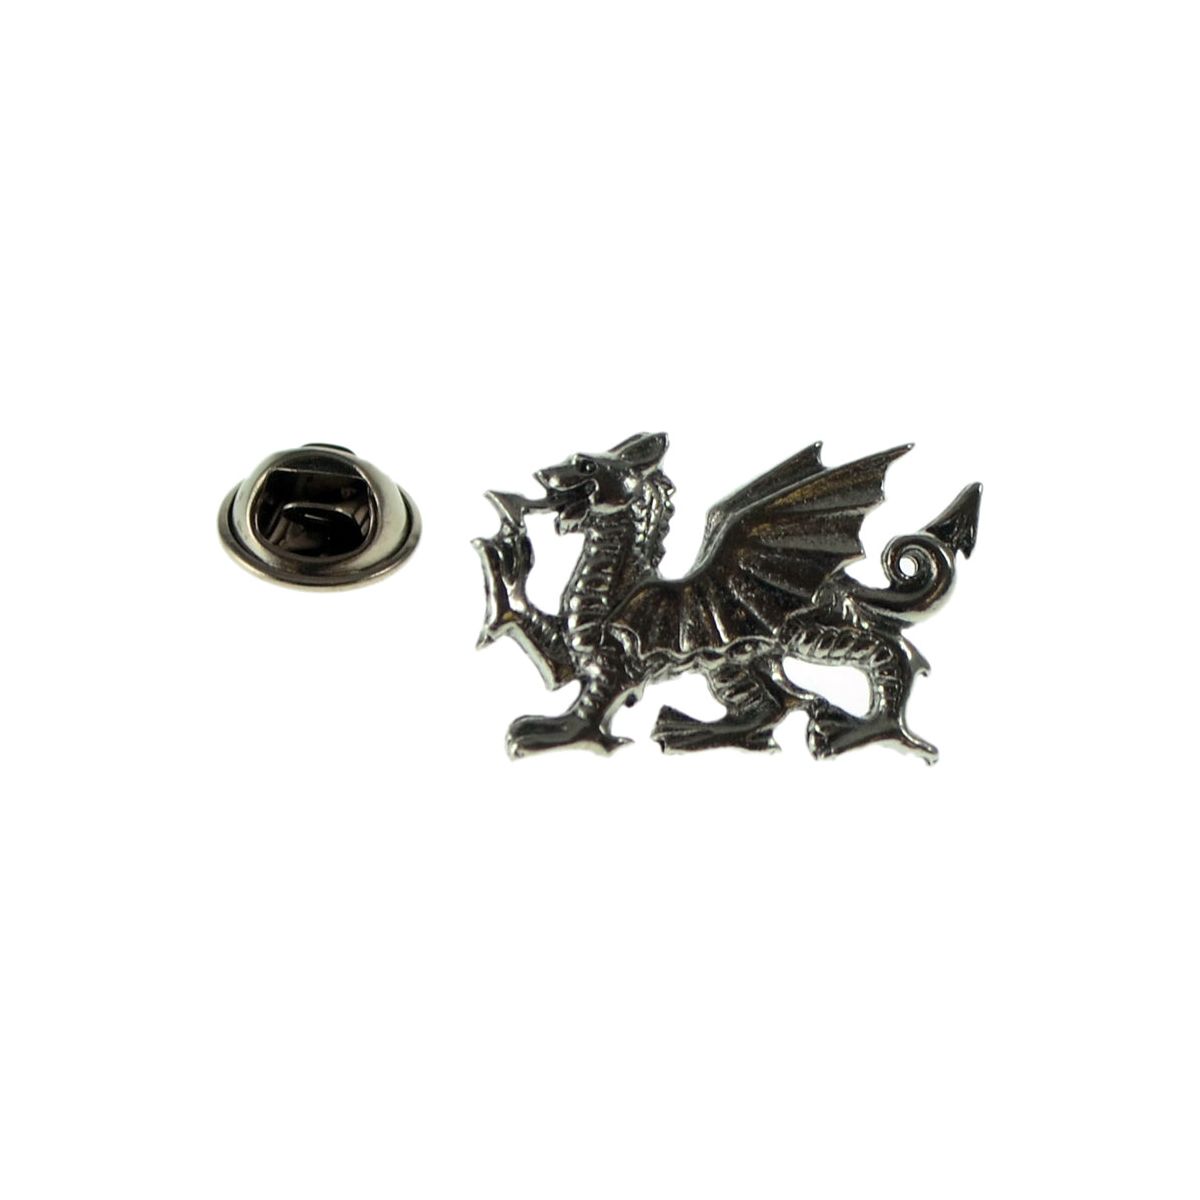 Heraldic Dragon Pewter Lapel Pin Badge - Ashton and Finch